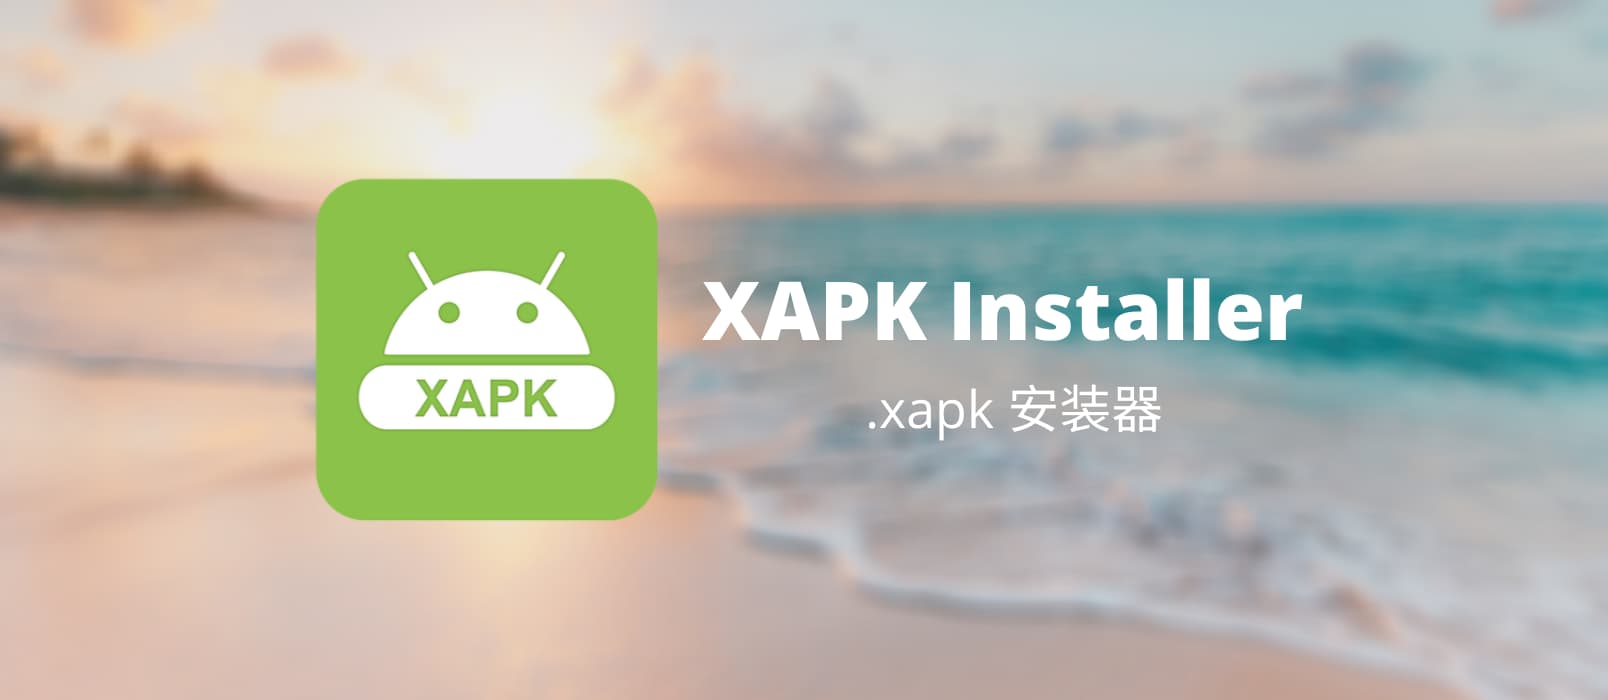 XAPK Installer - 安卓应用安装文件 .xapk 安装器[Android] 1